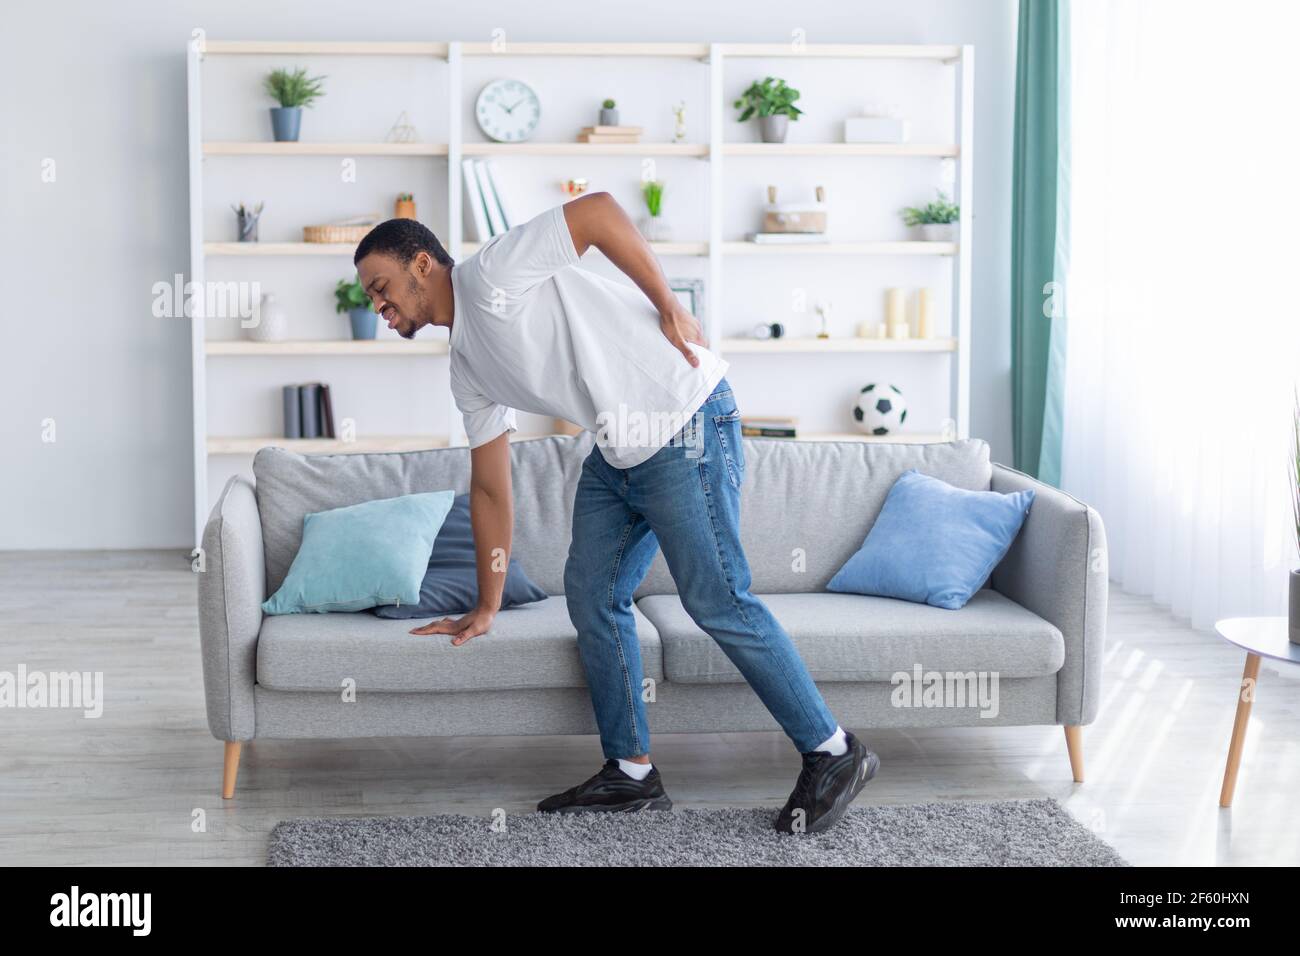 Un homme afro-américain millénaire souffrant de maux de dos, penché sur un canapé, ne peut pas marcher à la maison. Concept de soins de santé Banque D'Images